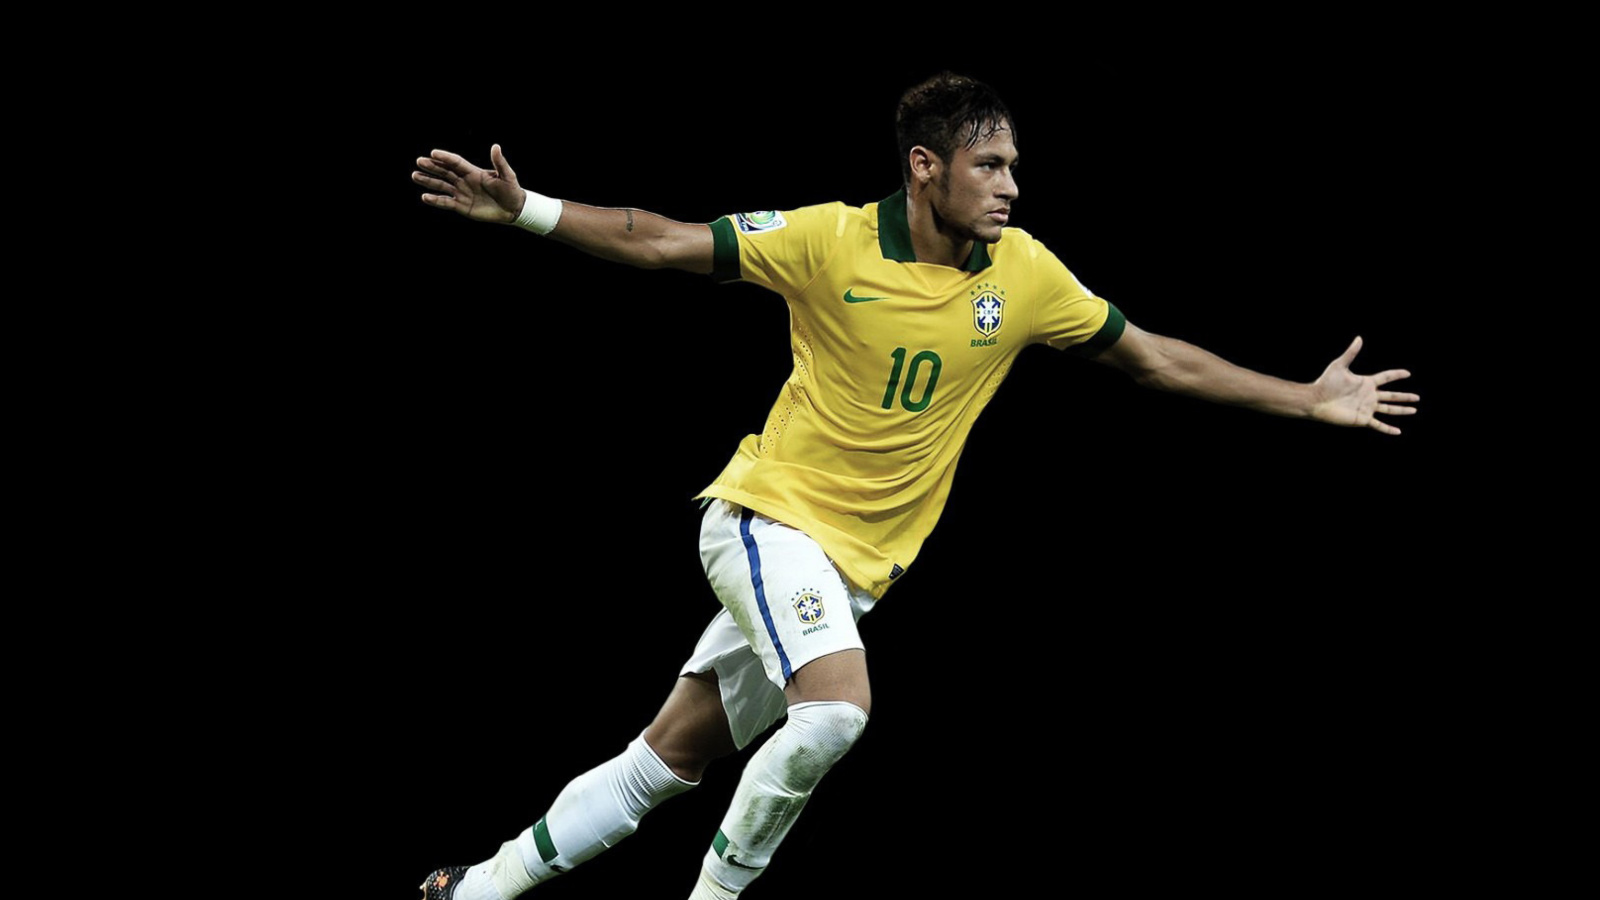 Das Neymar Brazil Football Player Wallpaper 1600x900